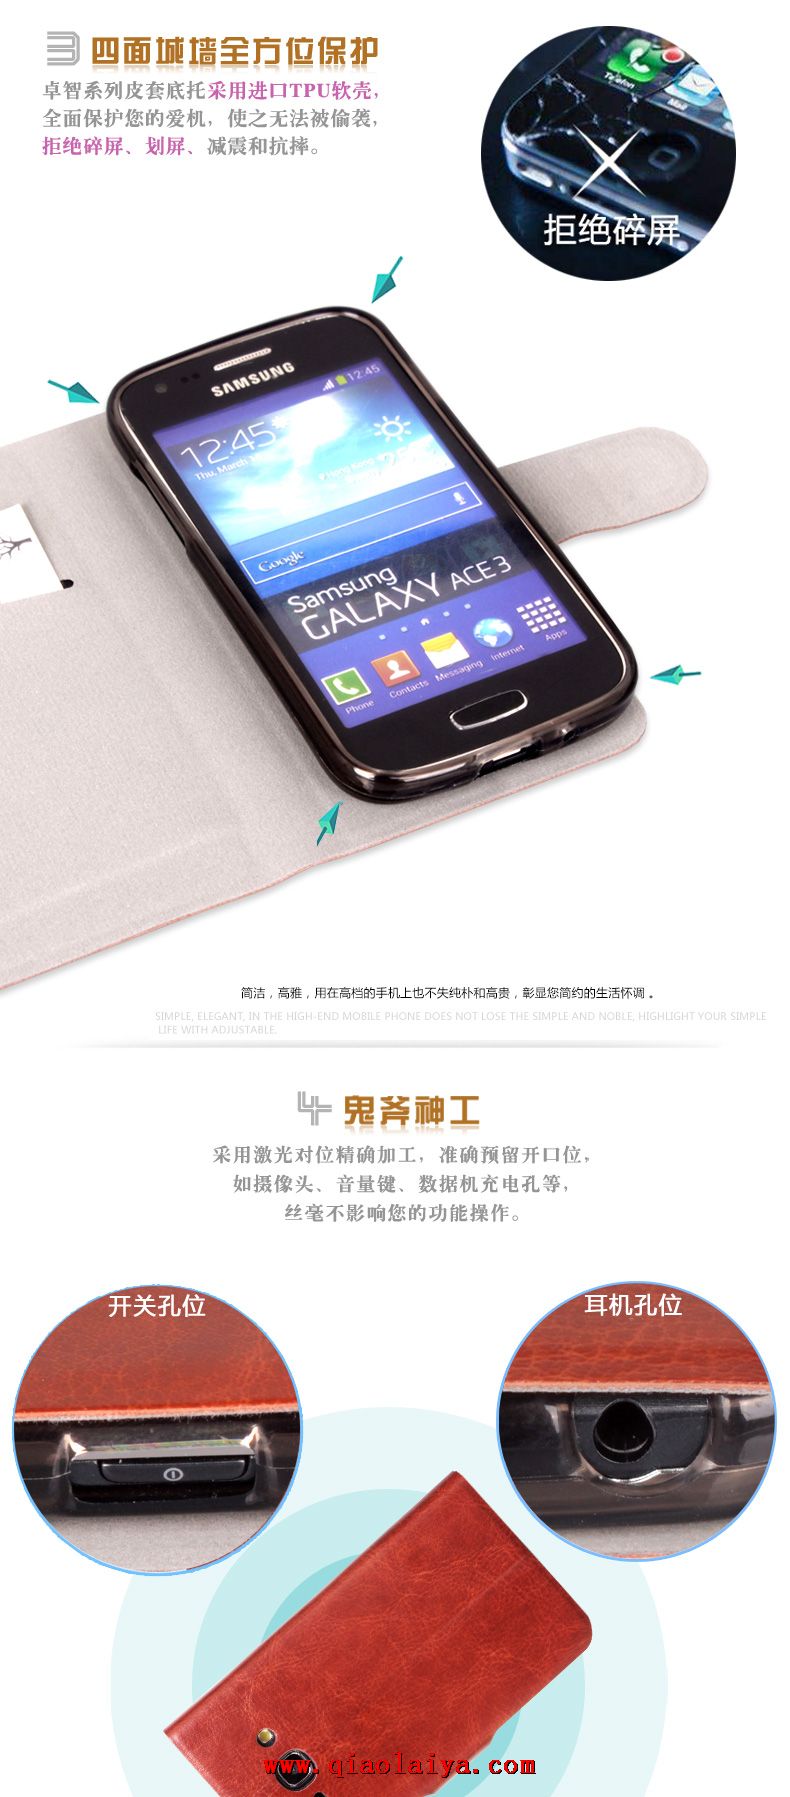 Samsung GT-S7275 étui en cuir de qualité Galaxy Ace 3 Coque de protection noire